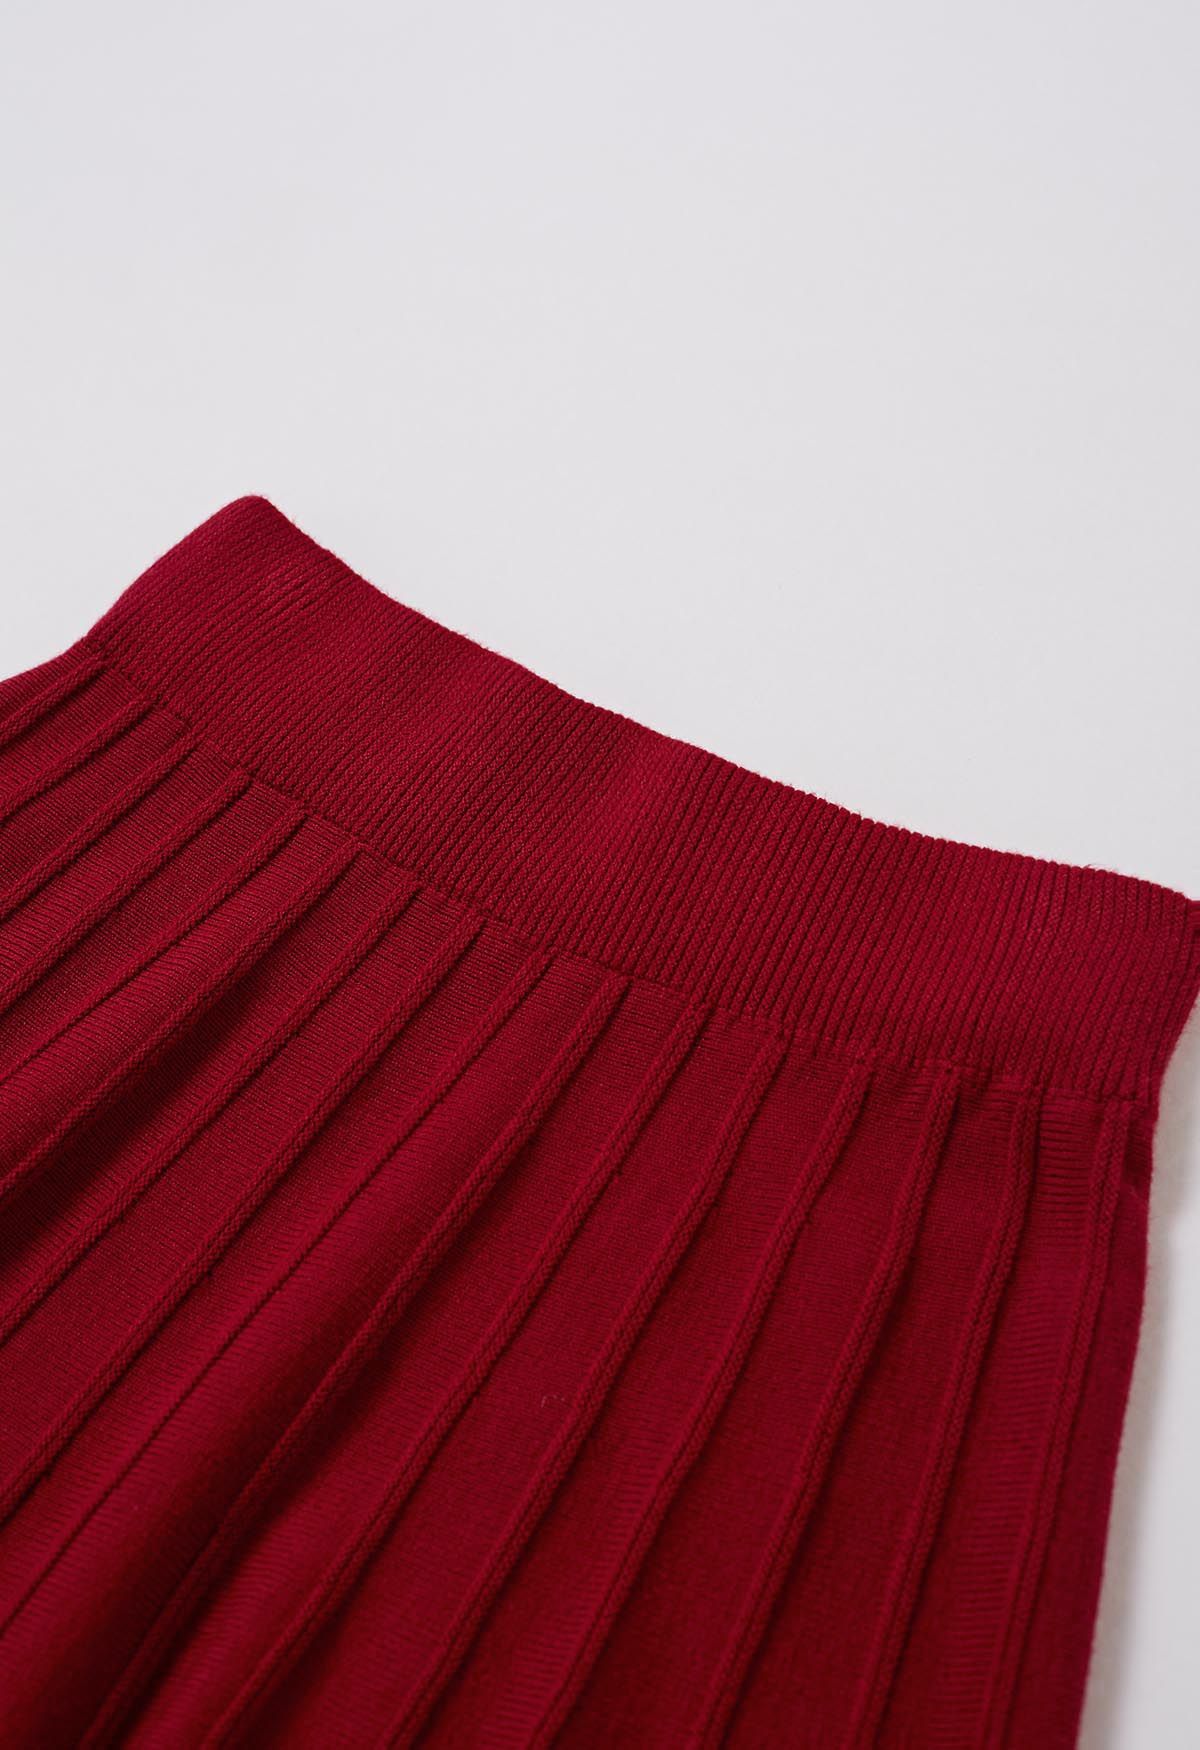 Jupe mi-longue en tricot à coutures ornées de perles argentées en rouge